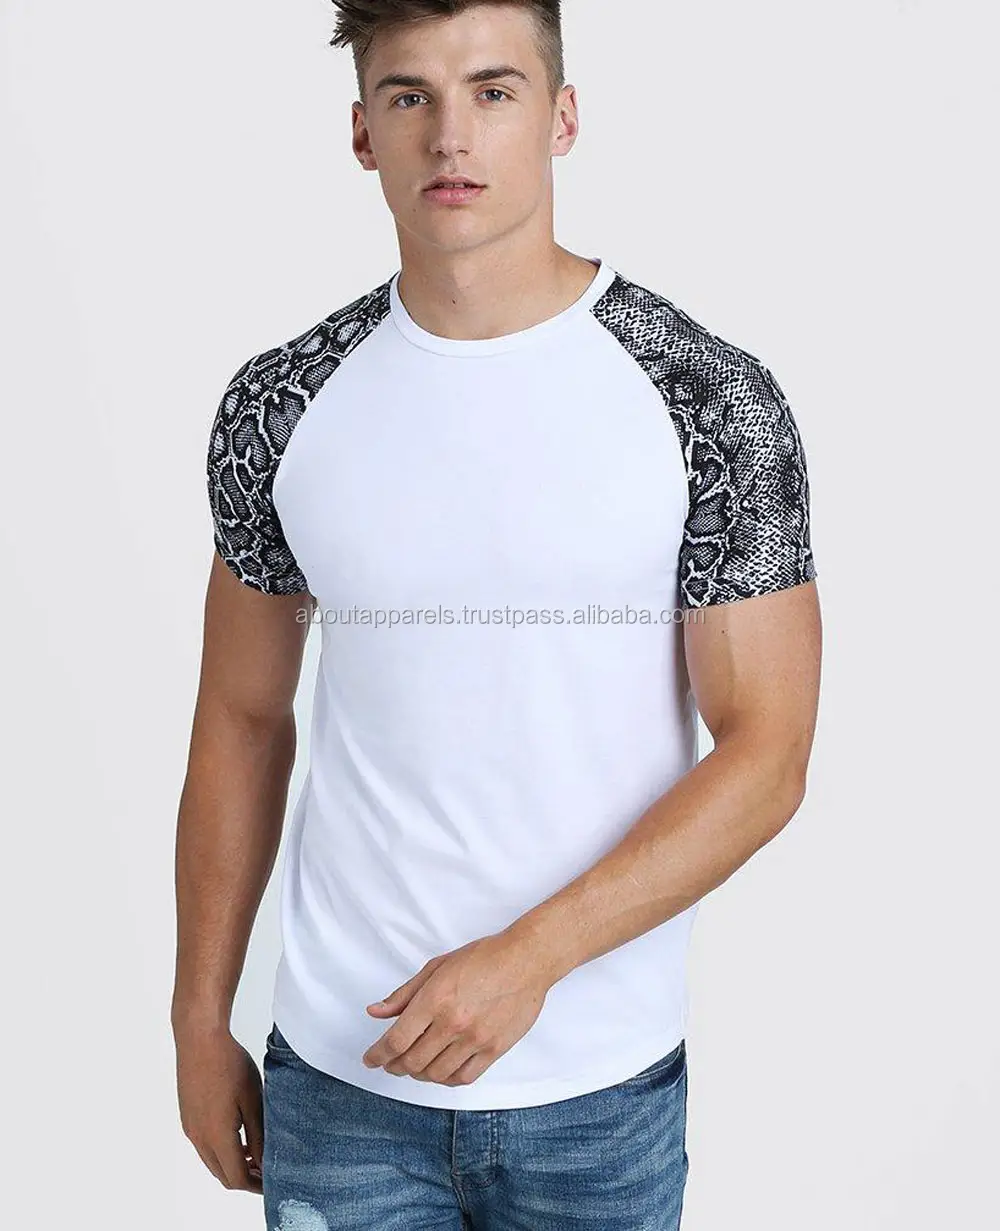 ホット販売快適なユニセックスカジュアルプリント/刺繍カスタム通気性Tシャツ、オリジナルメンズマッスルフィットスネークプリントラグランTシャツ